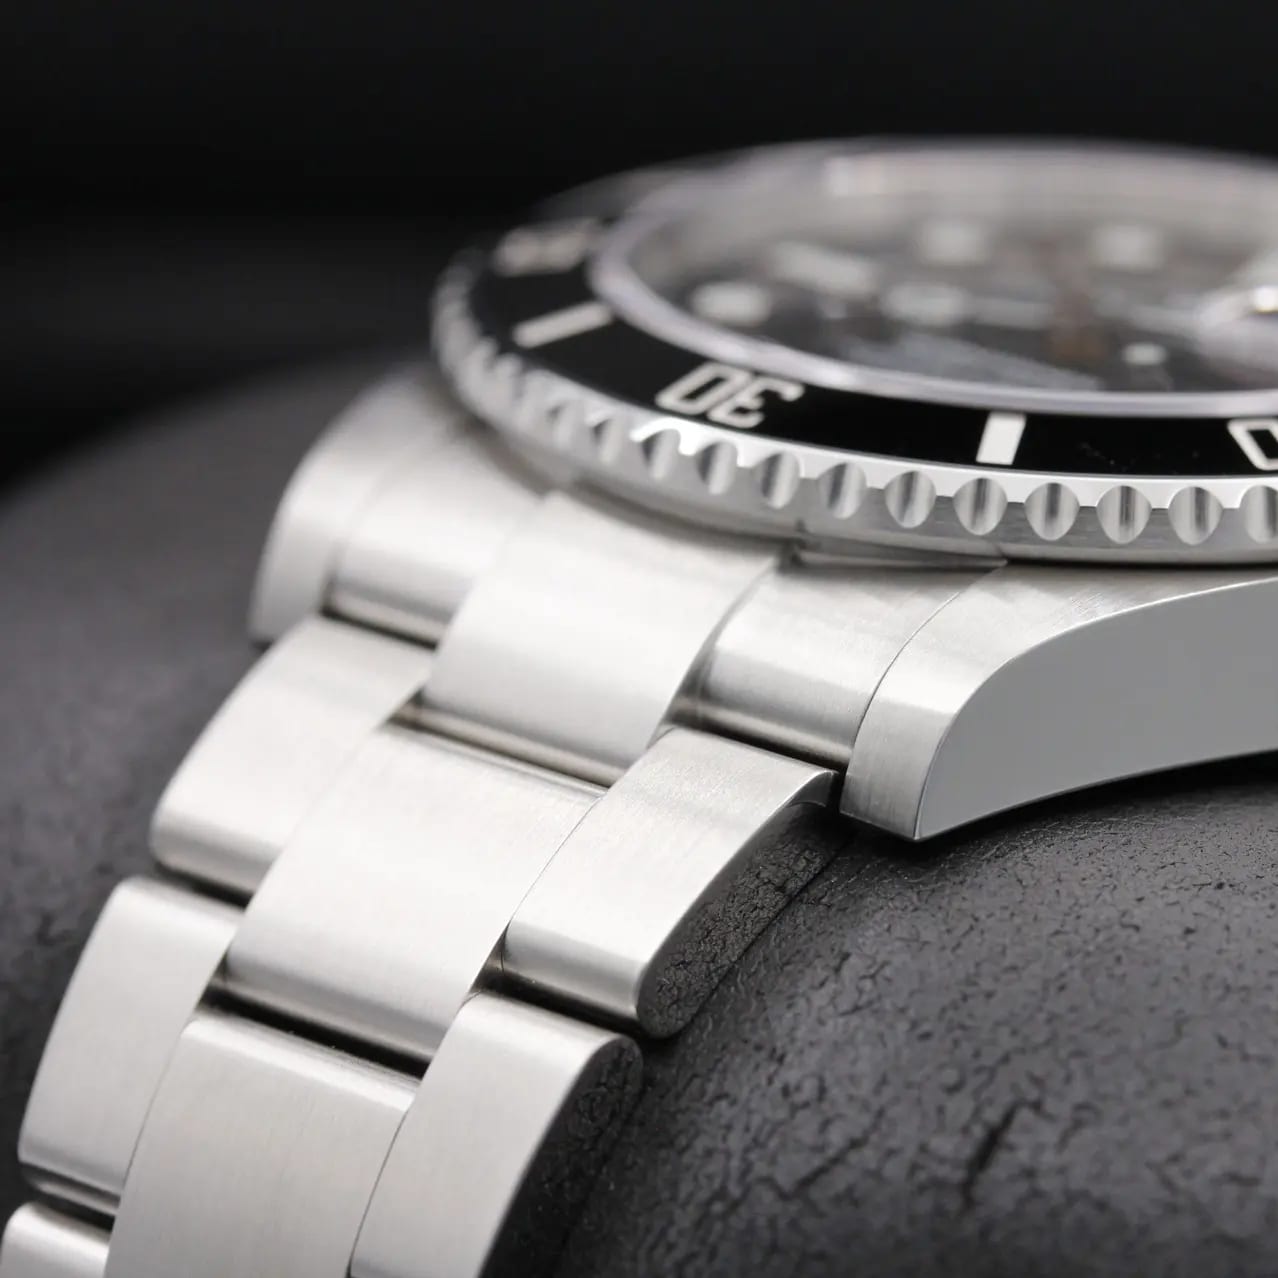 Rolex Submariner 126610LV “Starbucks” Stainless Steel 41 Mm Watch, 2022 -  Brilliance Jewels